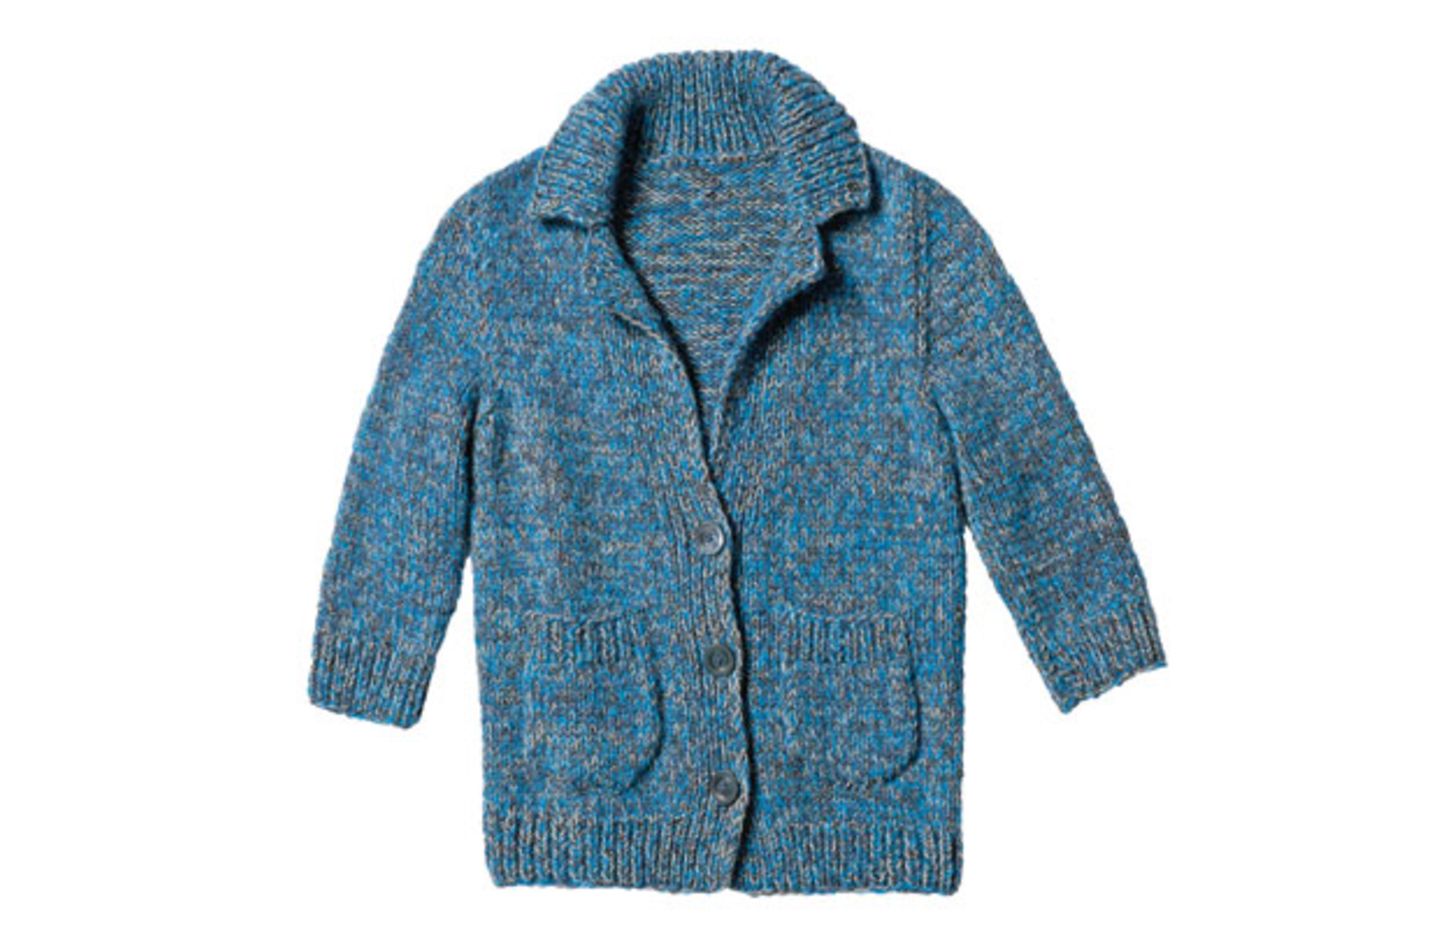 Blau melierte Jacke stricken - Anleitung und Muster